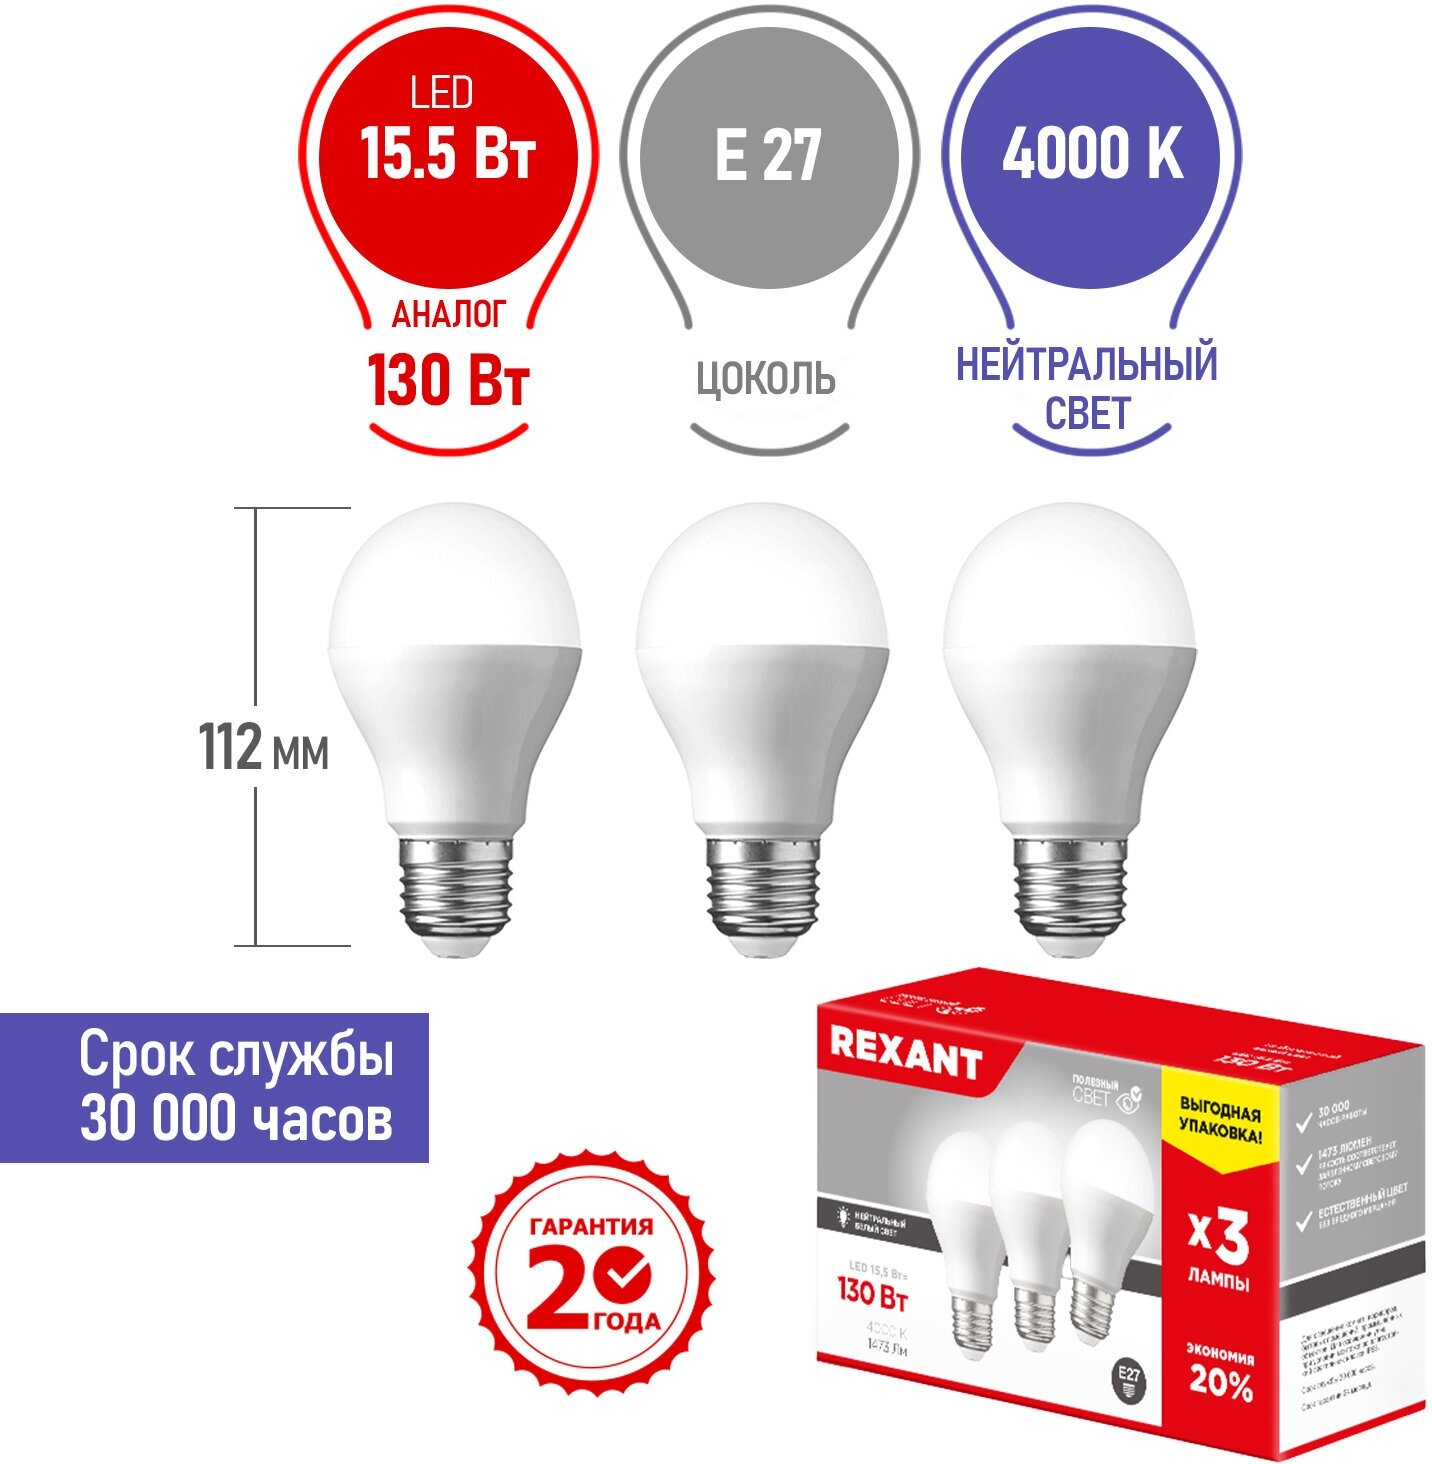 Светодиодная лампа REXANT Груша E27, 15.5 Вт, A60, 1473 Лм (=130 Вт), 4000 K (нейтральный свет), упаковка 3 шт.